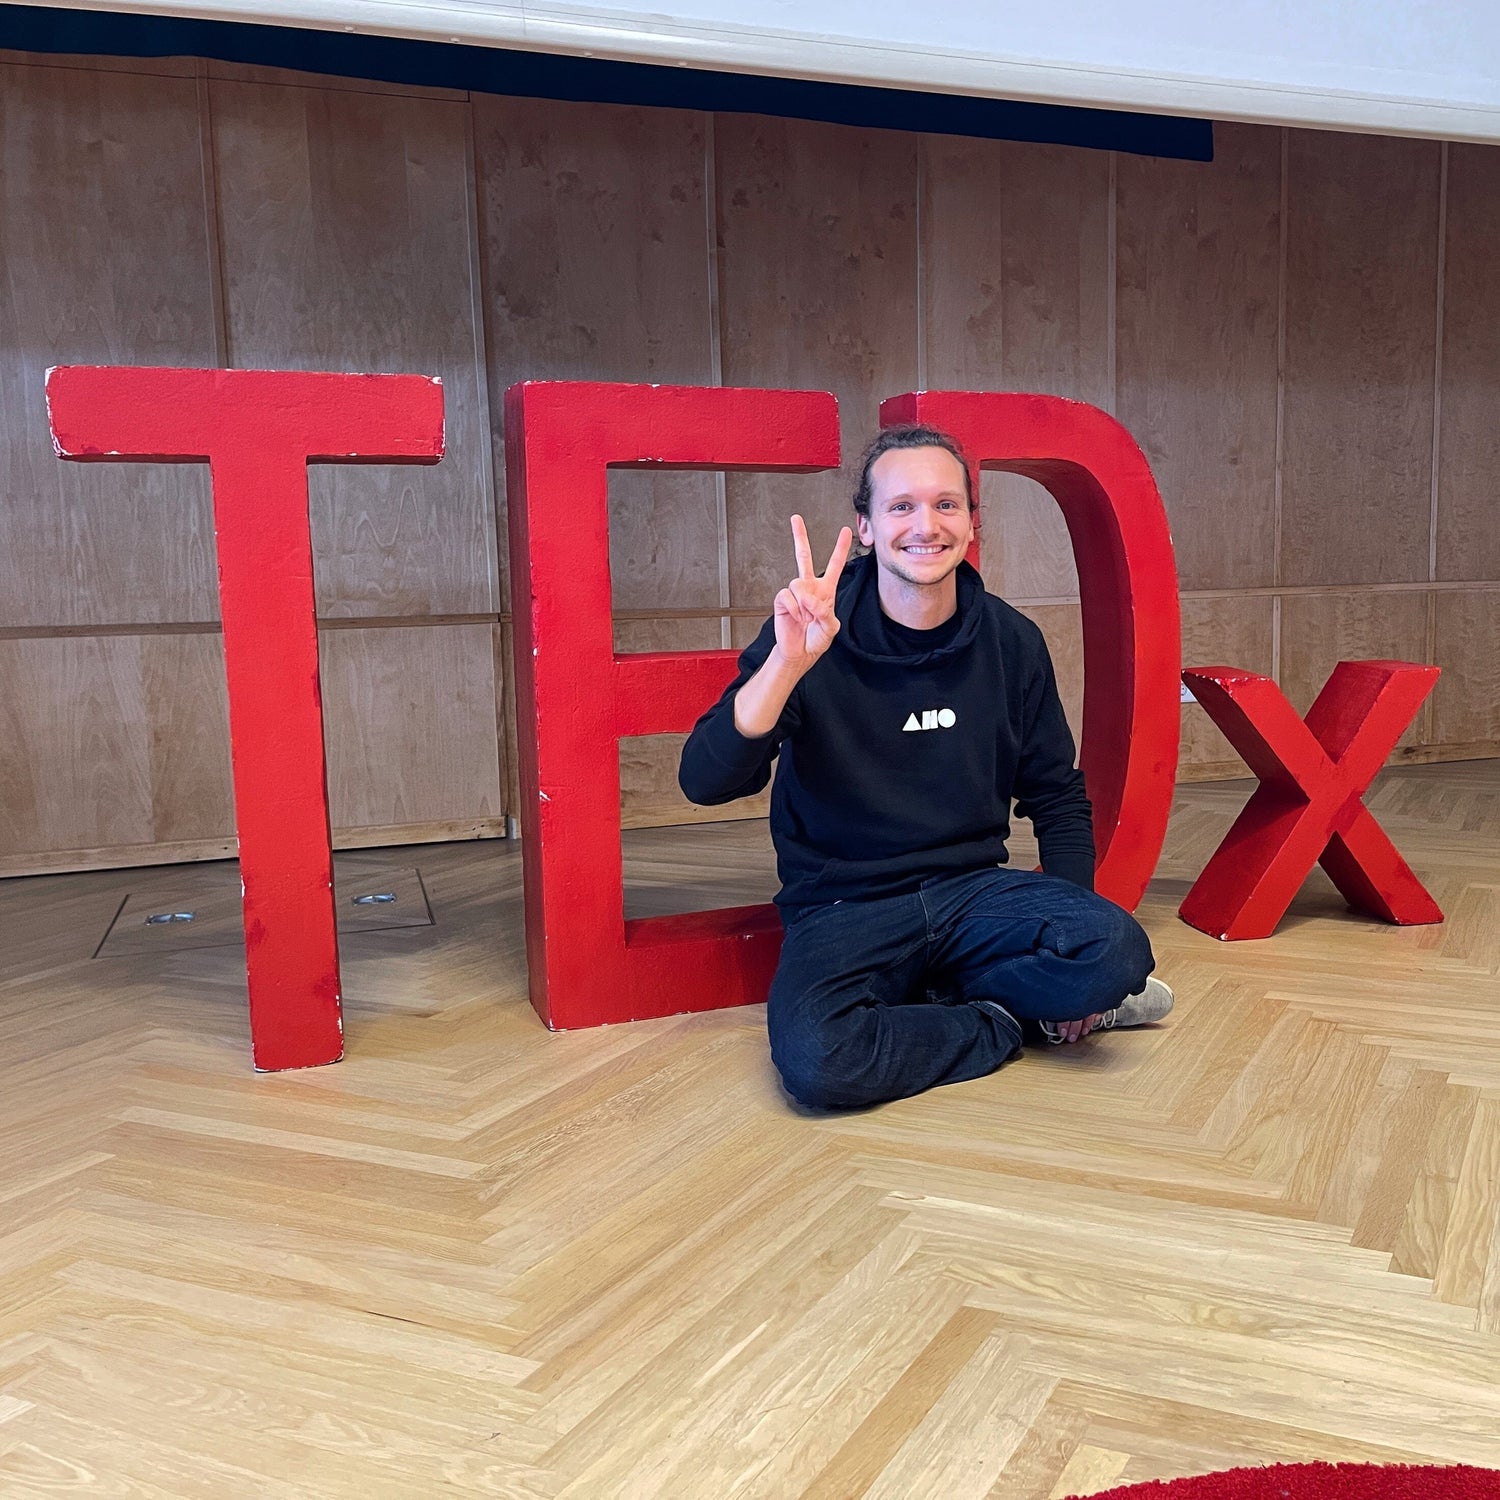 TEDx Vortrag über "Das Geheimnis der Nährstoffexplosion" an der Universität Mannheim